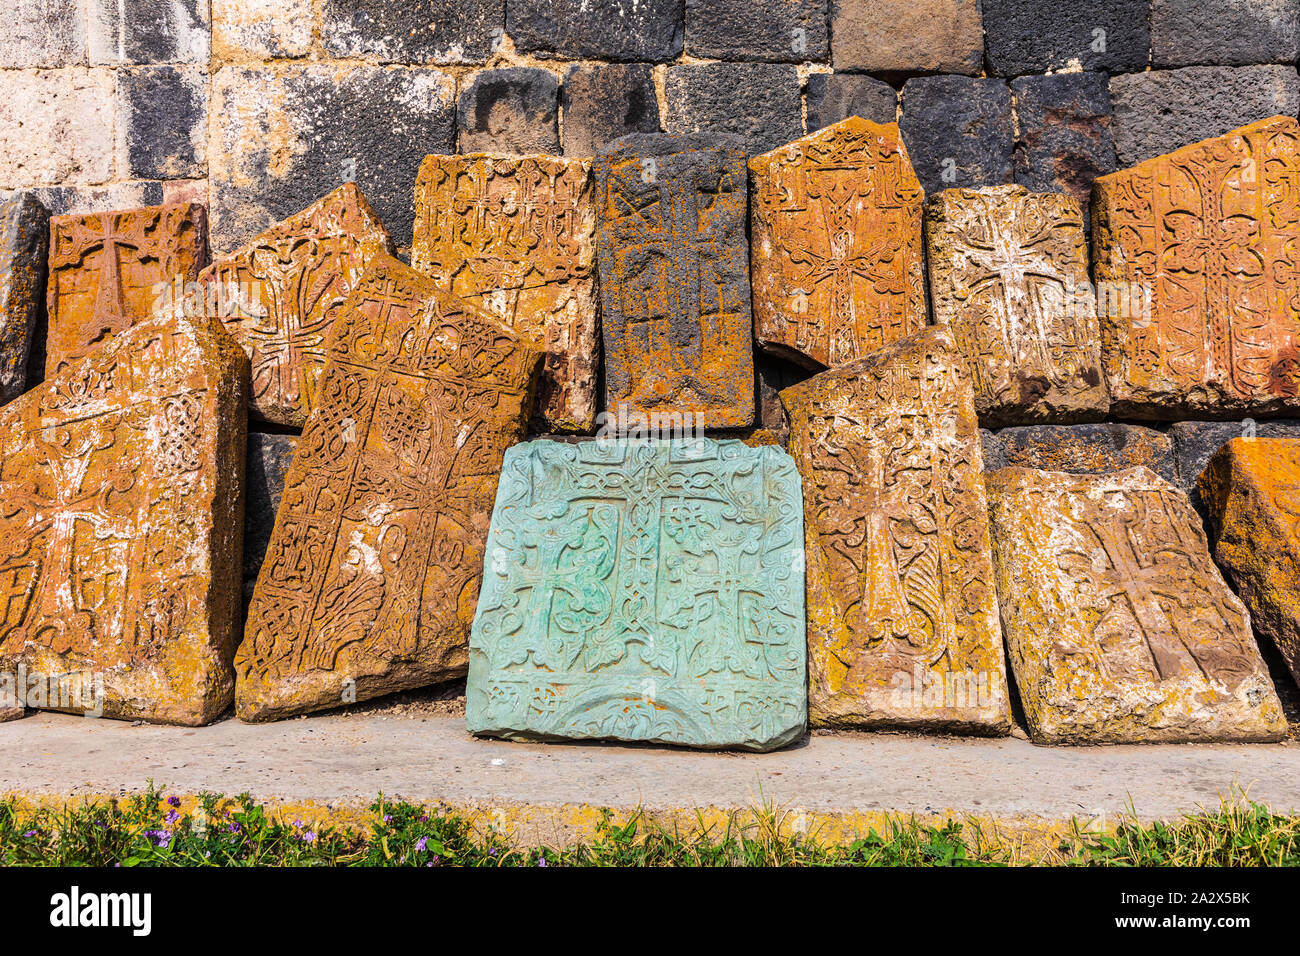 Armenia. Sevan. Las tabletas de piedra tallada fuera de la iglesia de Surp Arakelots Sevanavank en el monasterio en el lago Sevan. Foto de stock